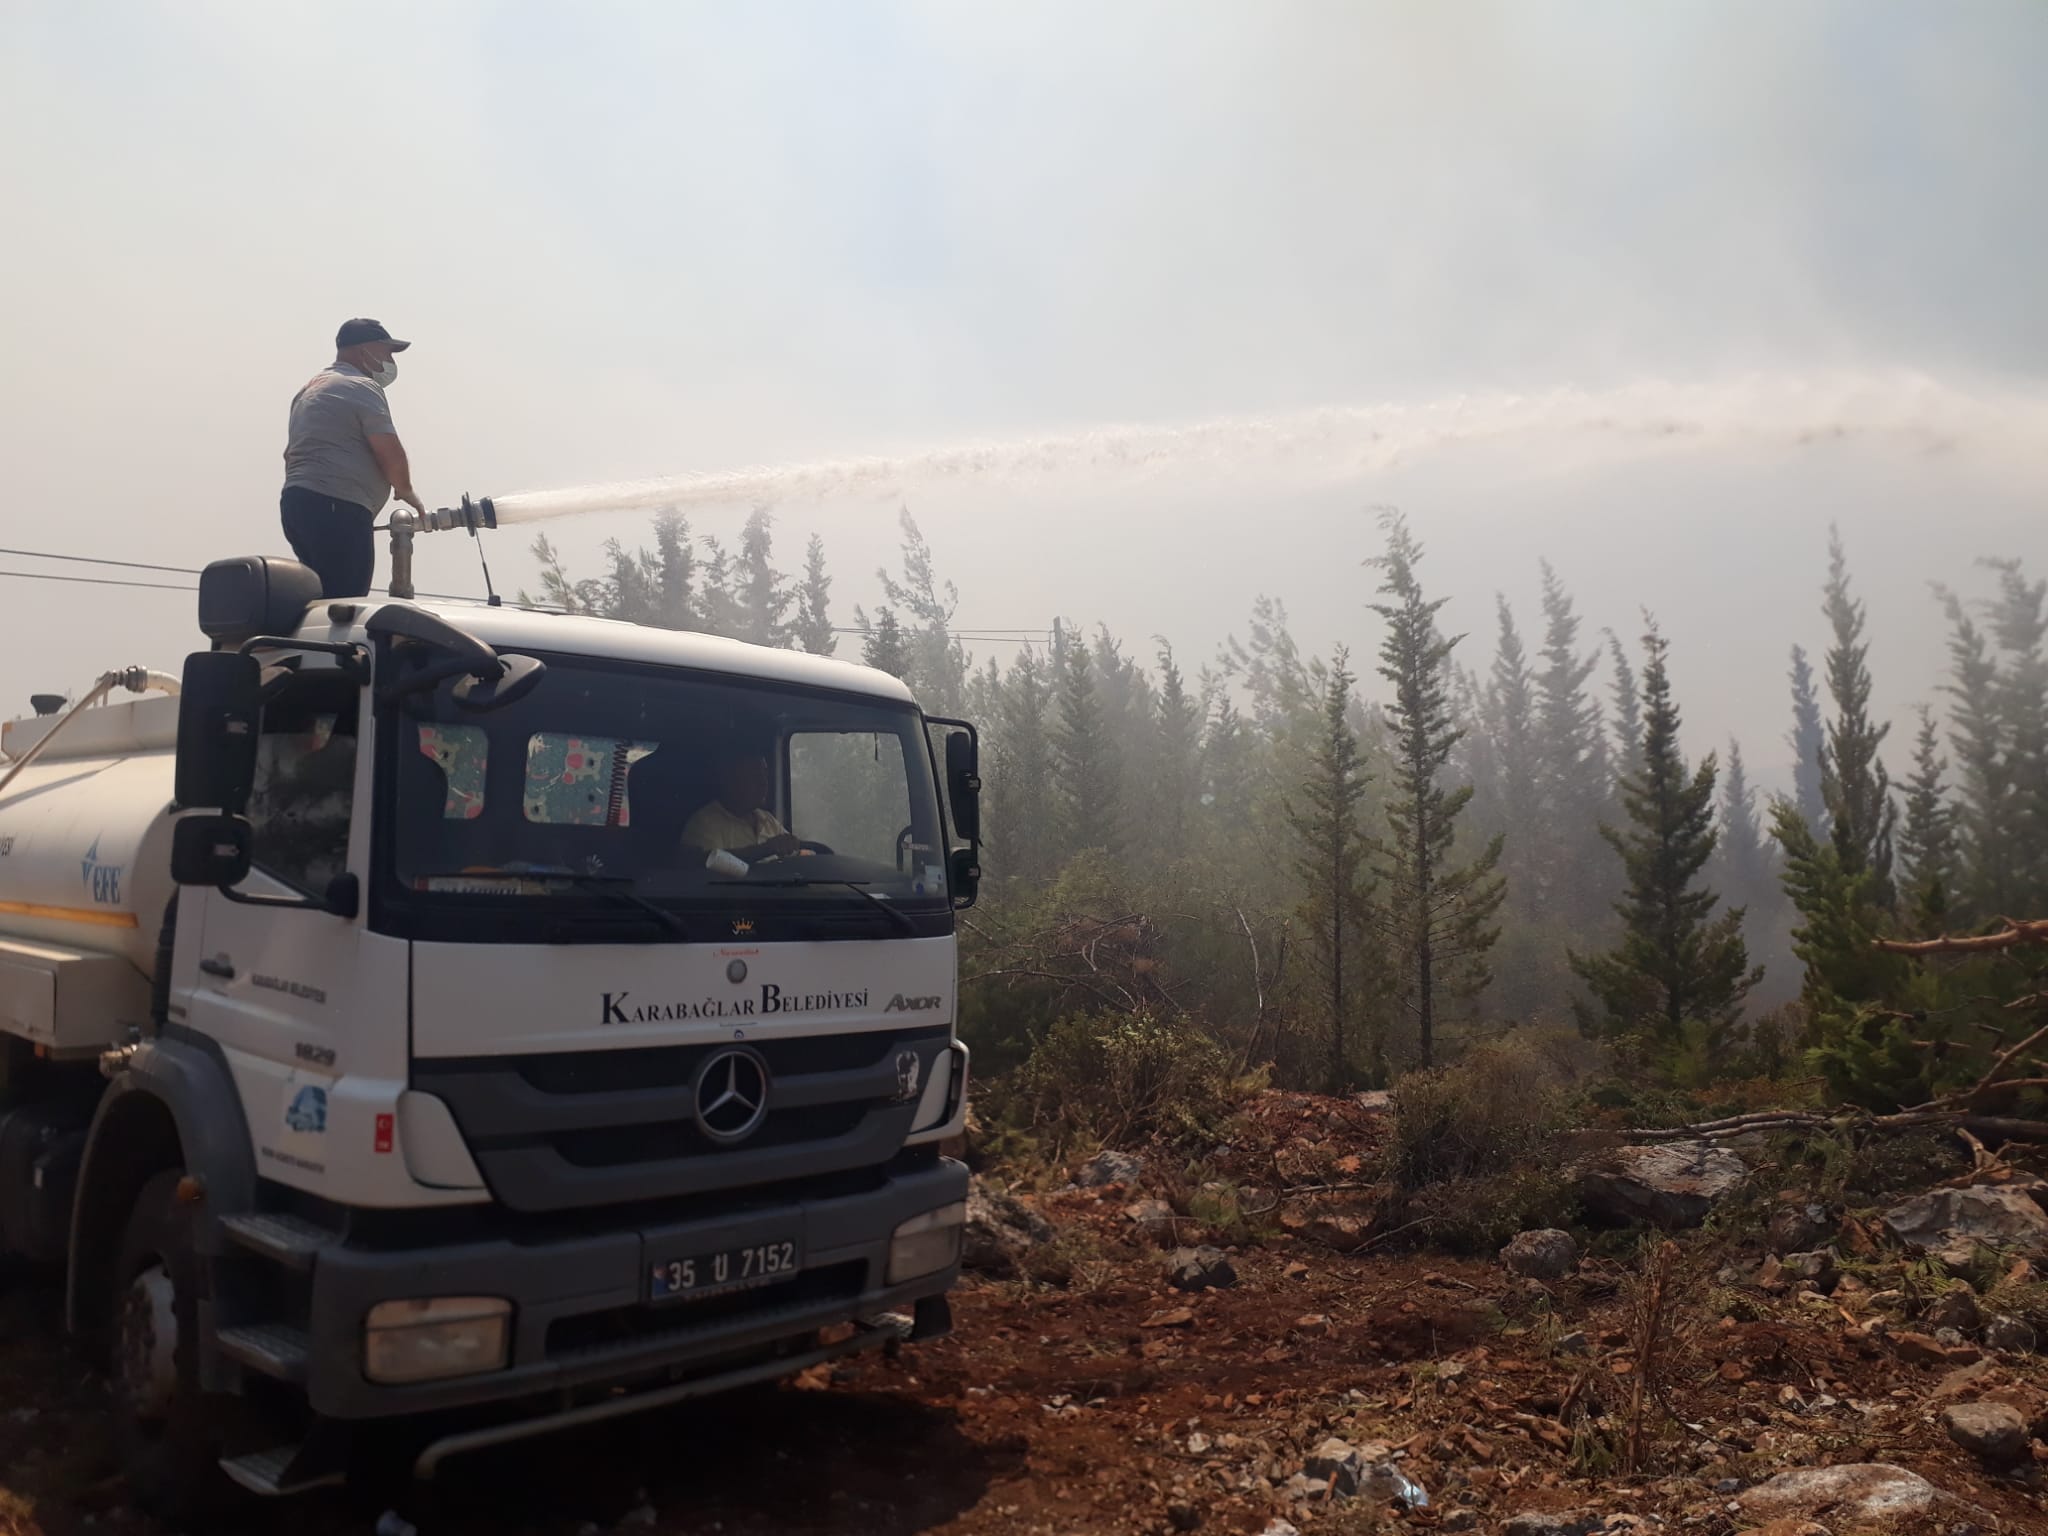 orman Karabağlar Belediyesi, Türkiye’nin farklı bölgelerinde art arda meydana gelen sel ve orman yangınlarından etkilenen kesimlere yardım elini uzattı. Artvin’in Arhavi ilçesindeki selin ardından bölgeye onlarca koli hijyen malzemesi ulaştırılırken, Bodrum’daki yangınla mücadele için de arazöz ve personeller yönlendirildi. Arazöz ve personeller yangın söndürme ve soğutma çalışmalarında profesyonel ekiplere katkı sağlamaya devam ediyor.